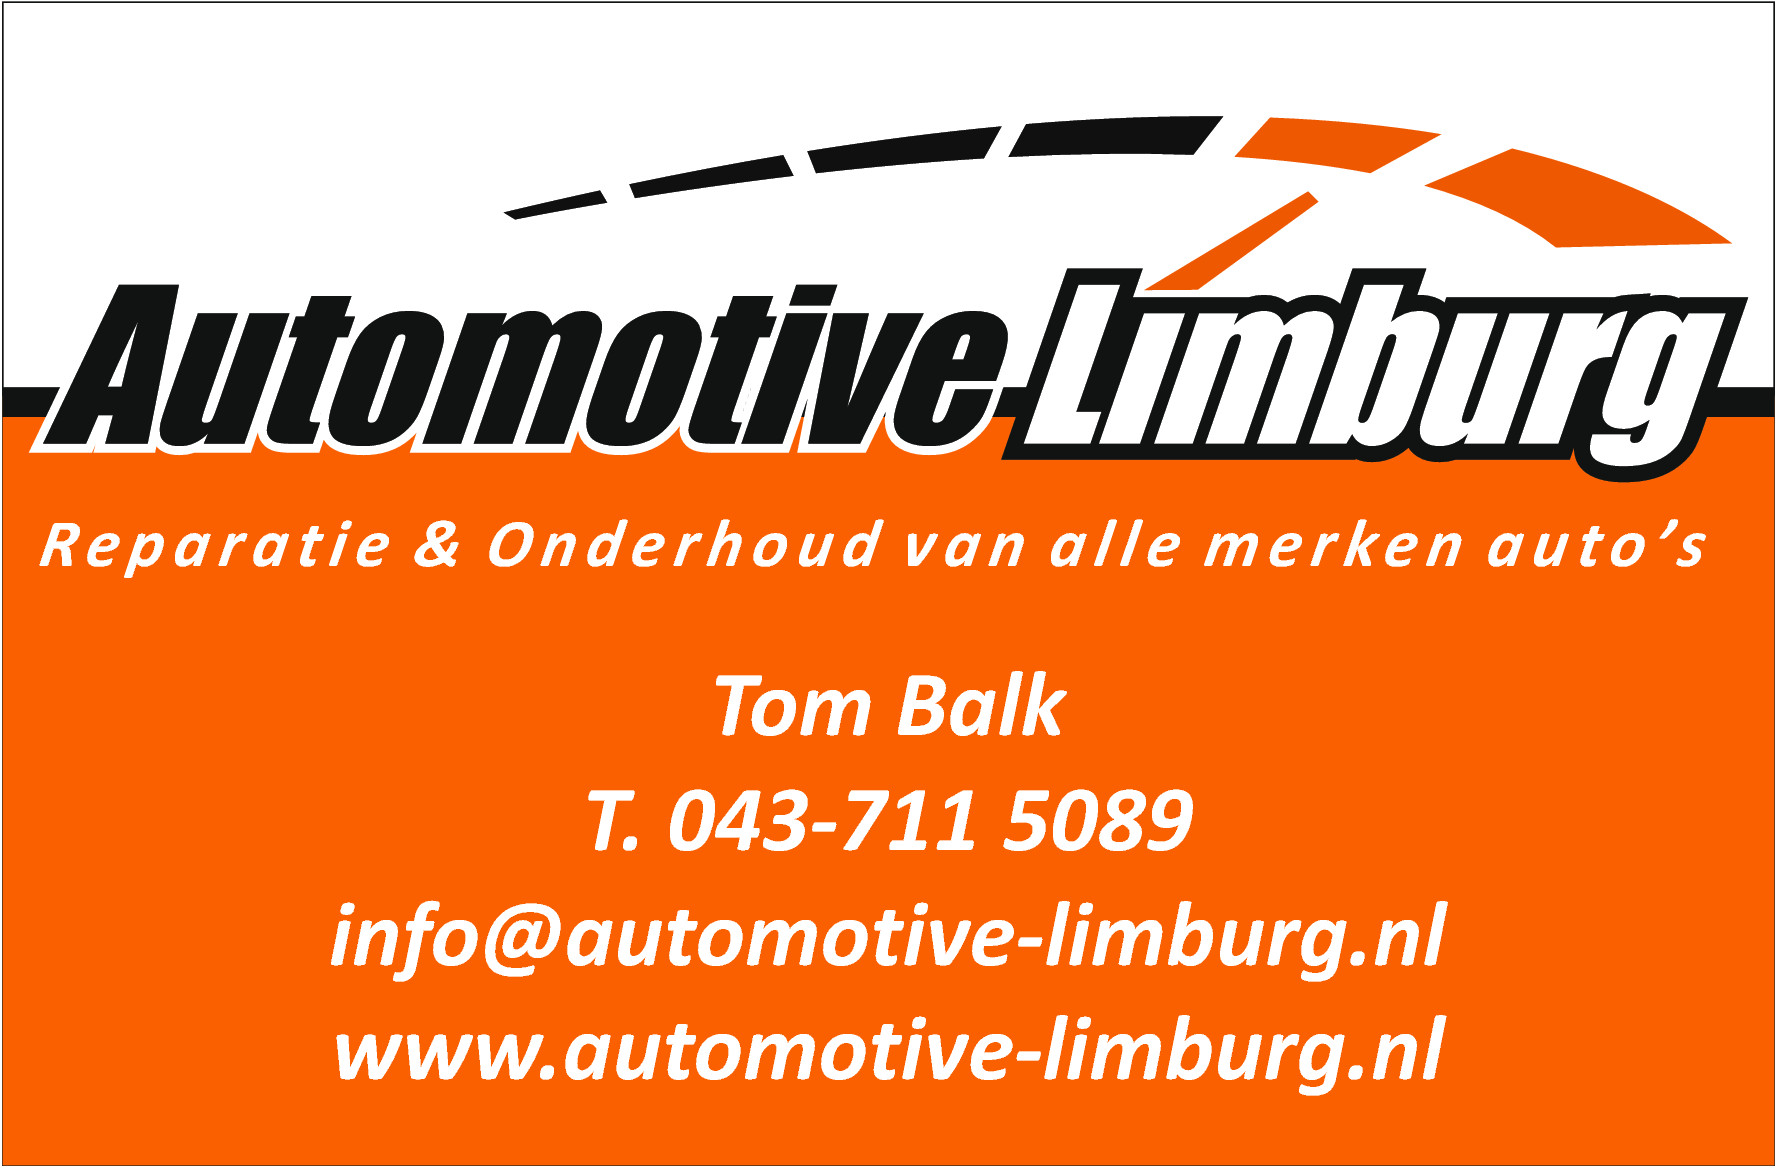 Foto's Automotive Limburg